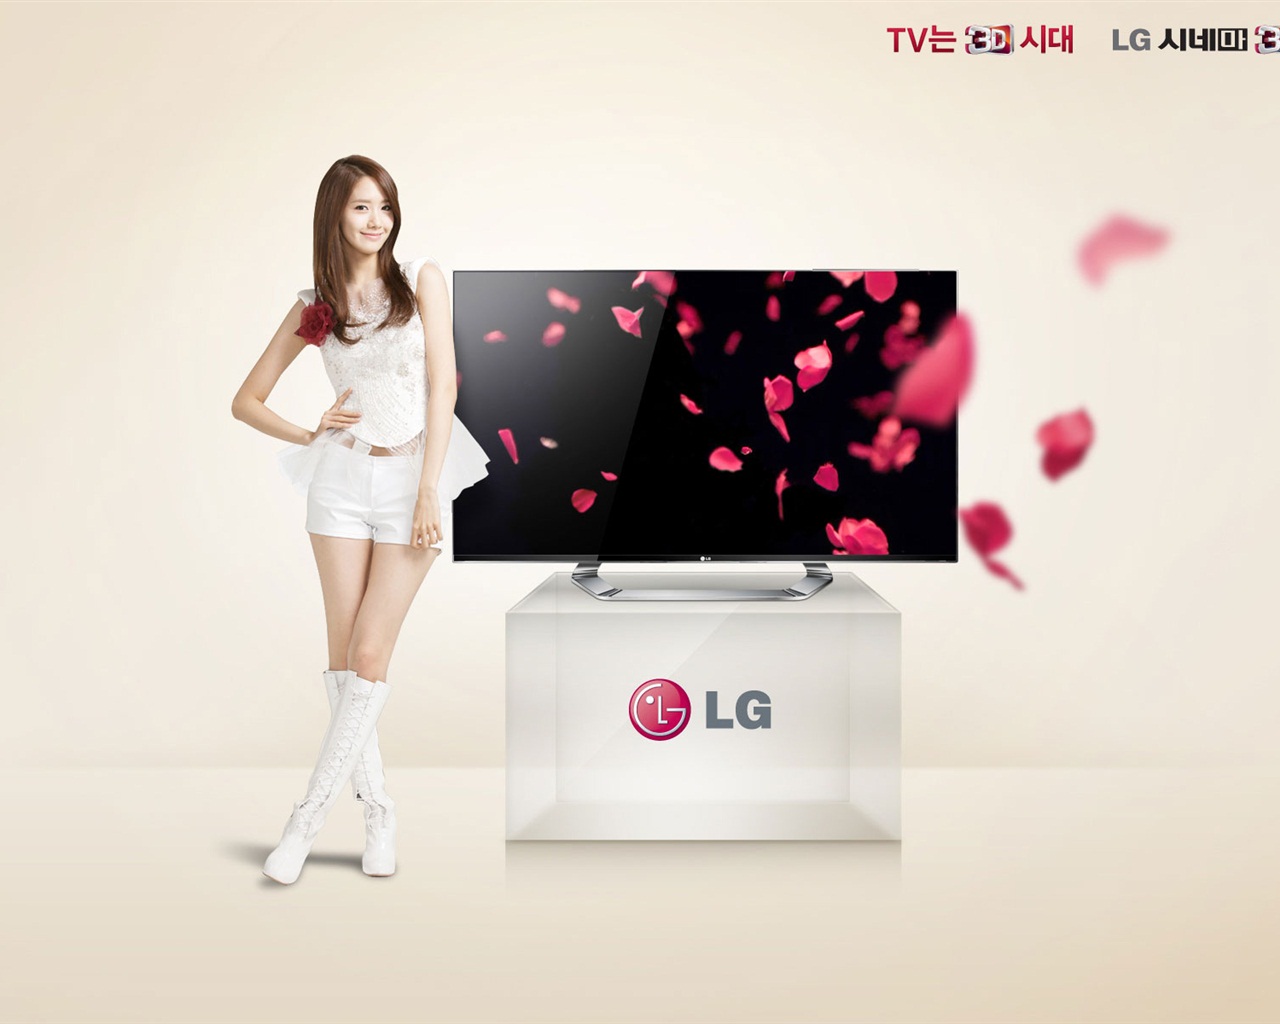 少女时代 ACE 和 LG 广告代言 高清壁纸20 - 1280x1024